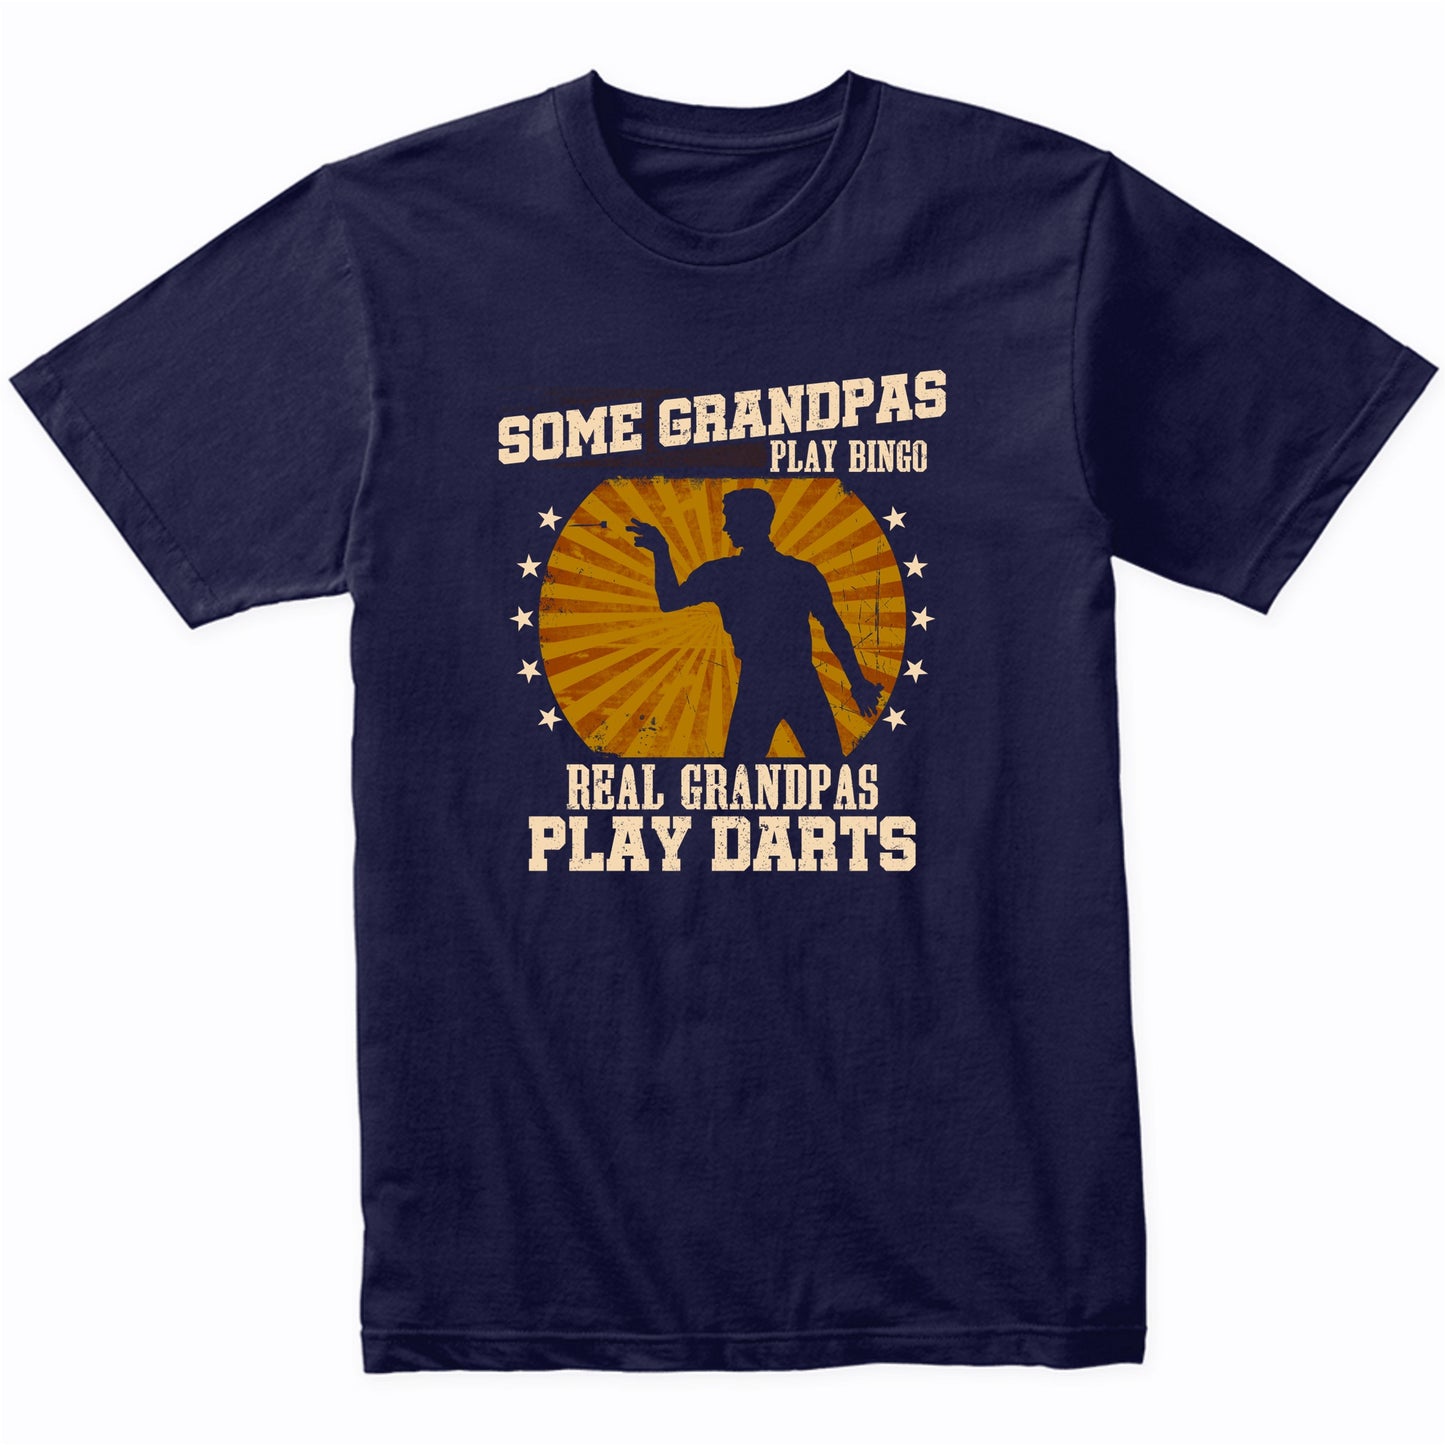 Darts Grandpa Shirt - Real Grandpas Play Darts T-Shirt